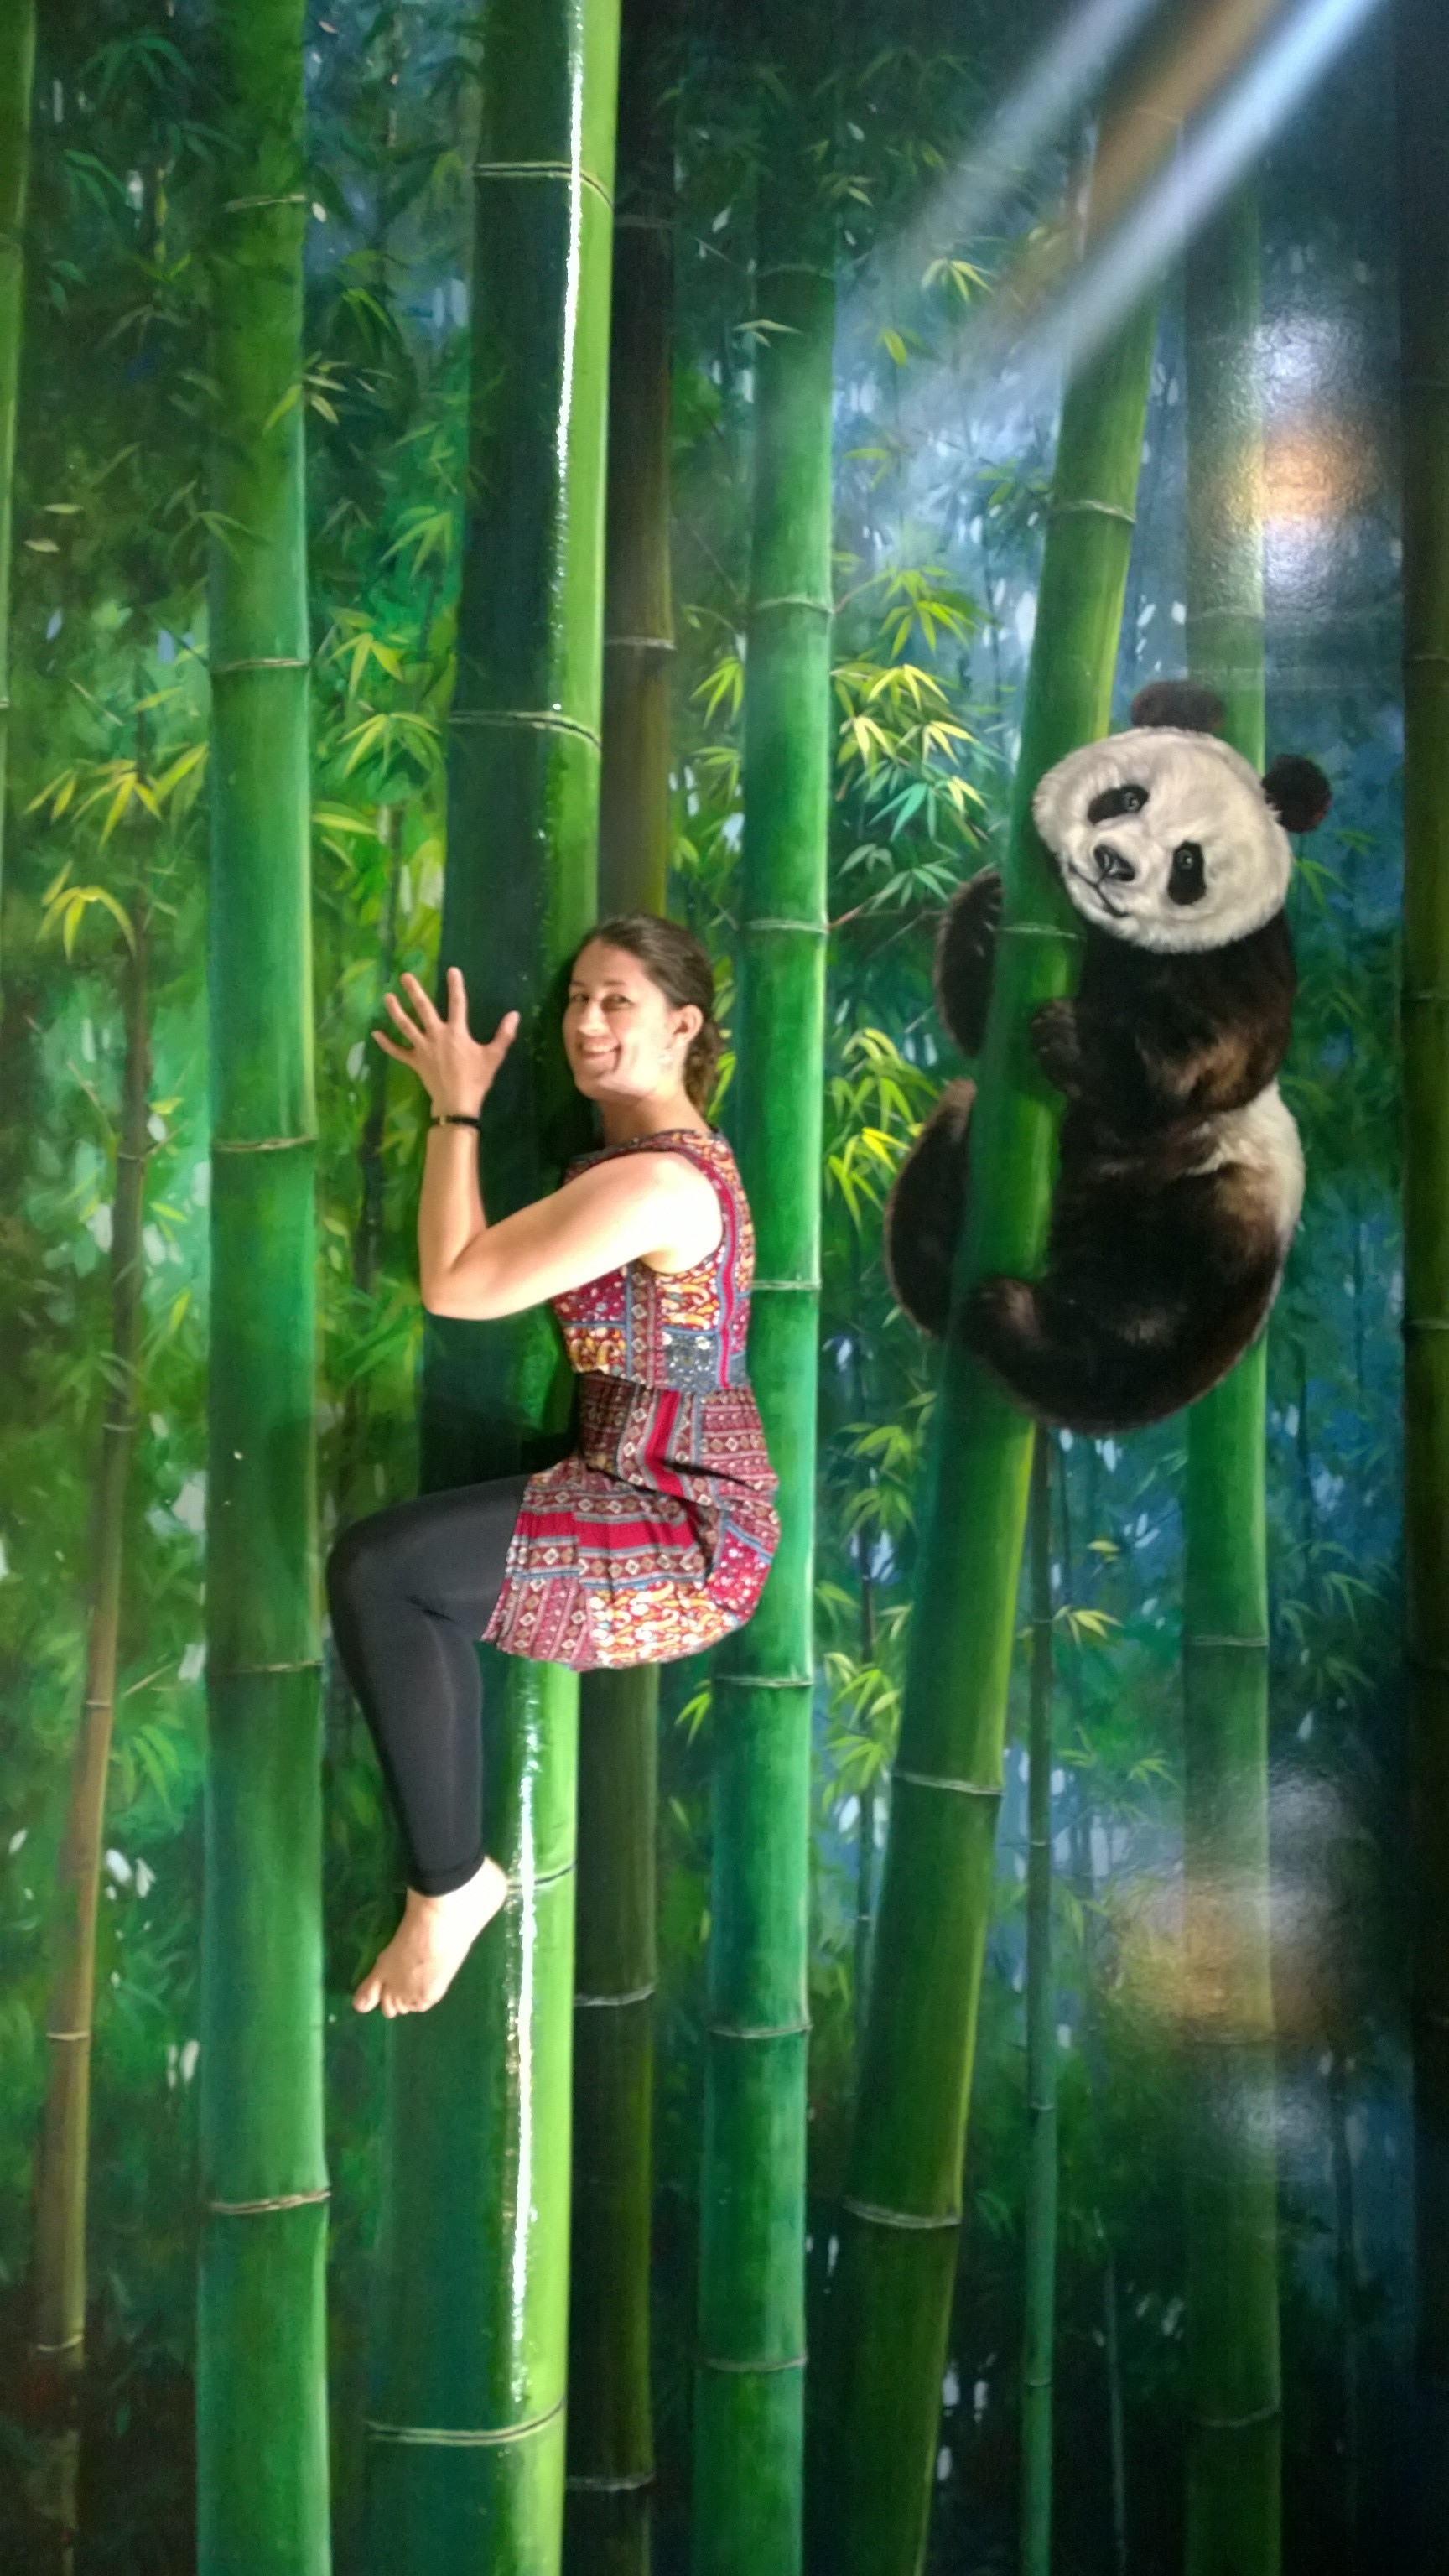 3D art museum Langkawi- pandas and bamboo